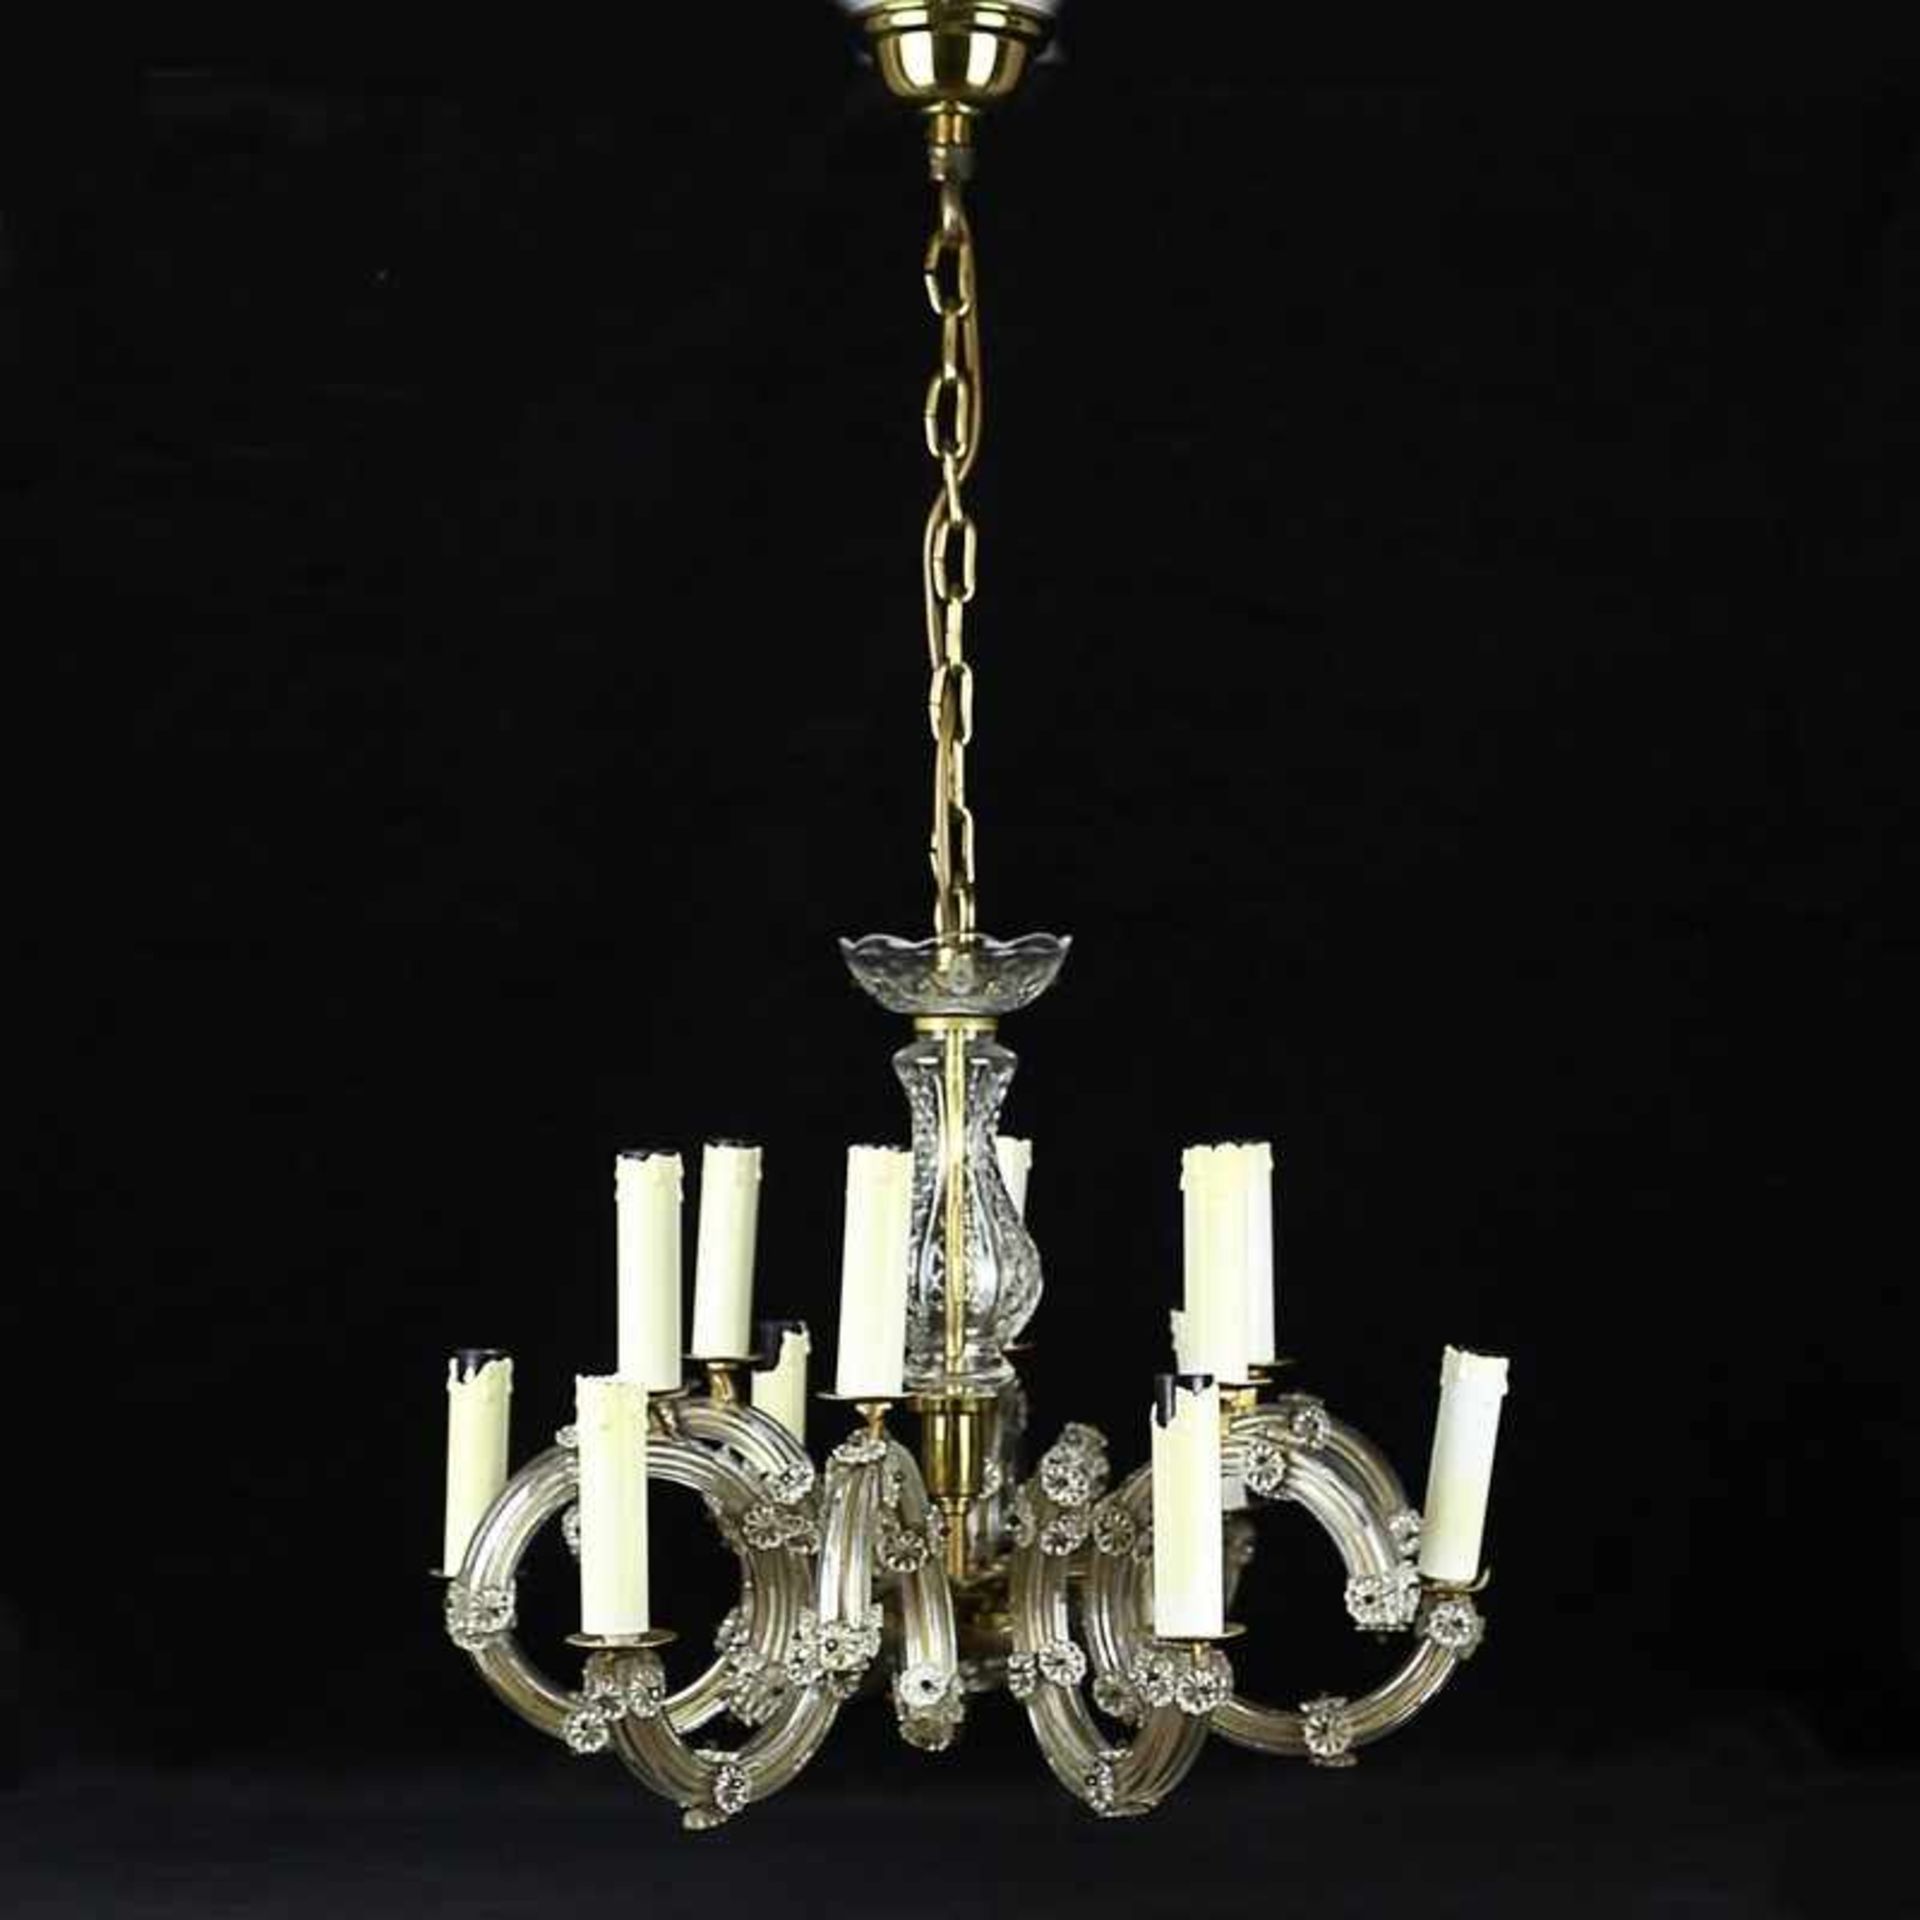 Deckenlampe Glas/Metall, 12-flammig, balusterförmiger Schaft, gebogte Leuchterarme, Blütendekor,